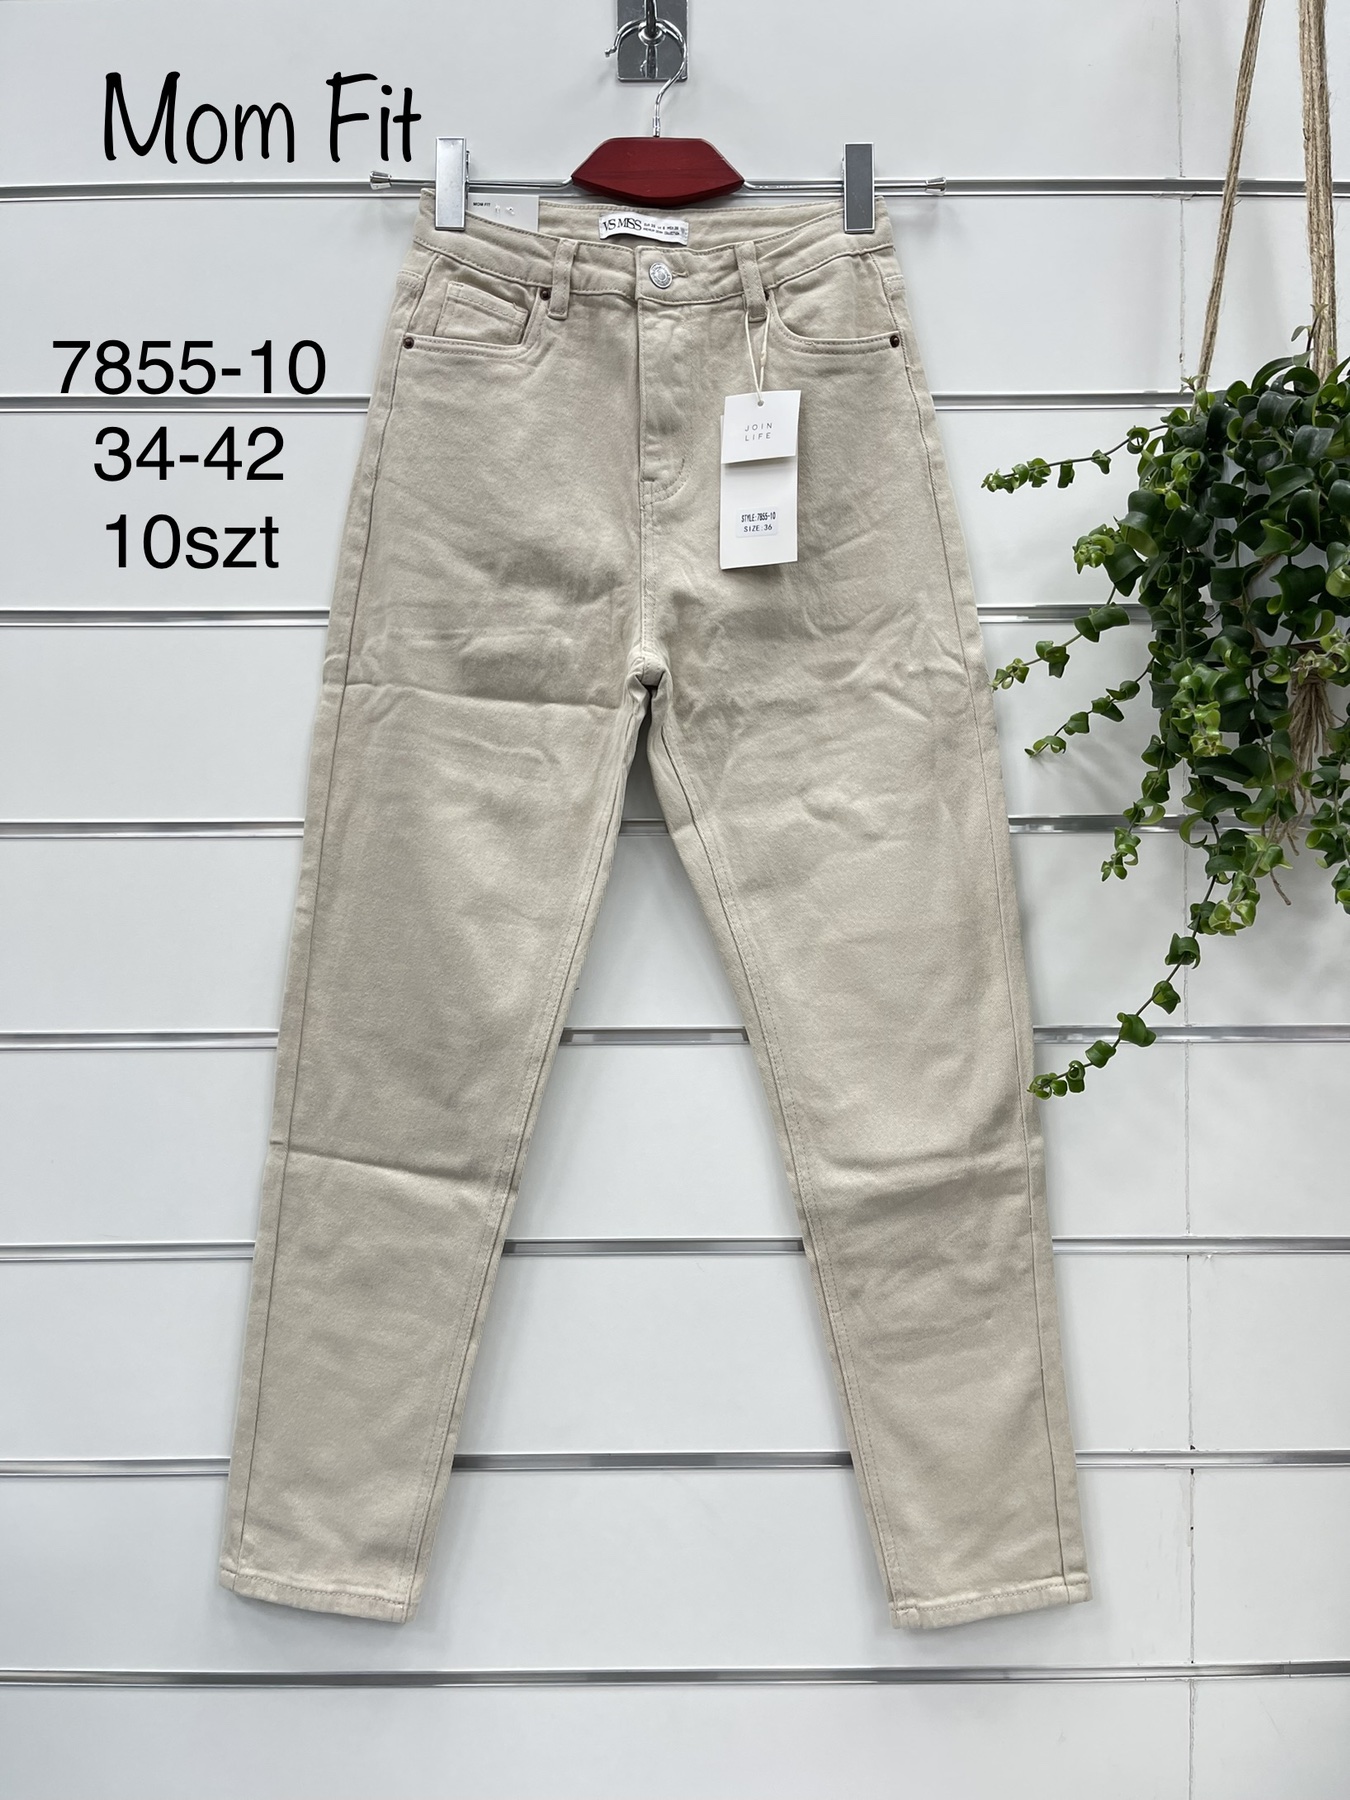 Spodnie  damskie jeans Roz 34-42  1 kolor . Paczka 12szt